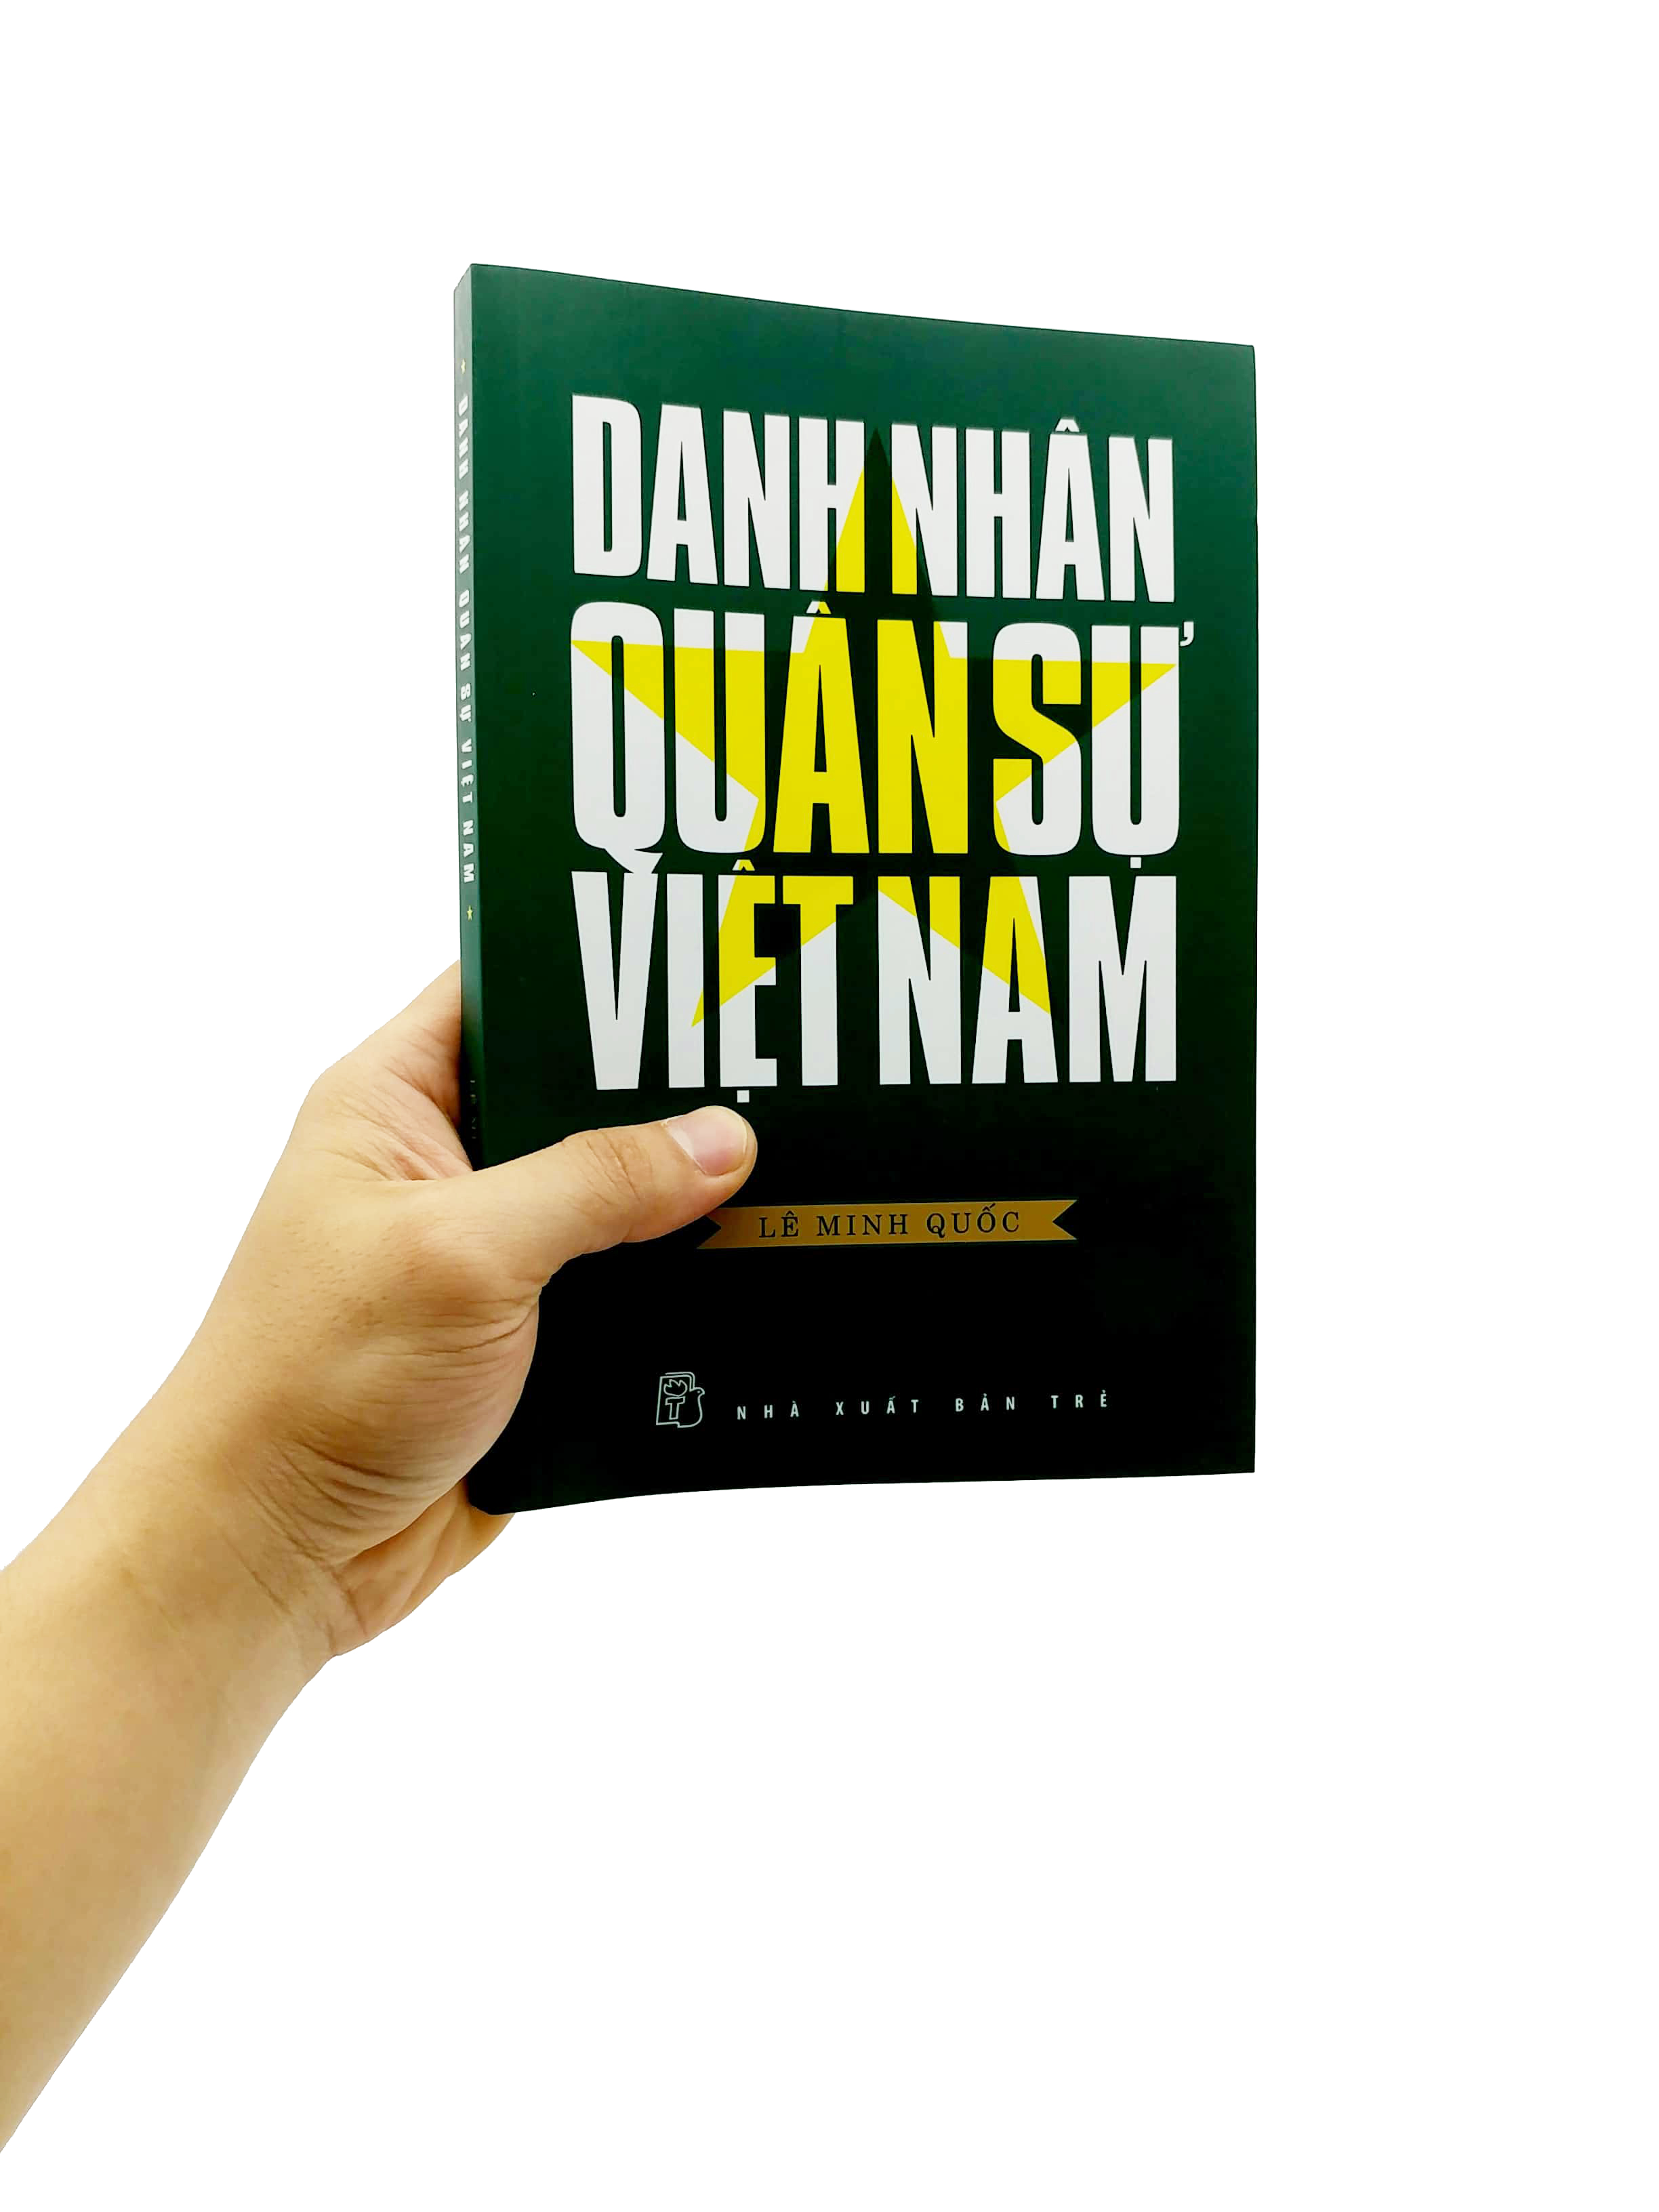 Danh Nhân Quân Sự Việt Nam PDF